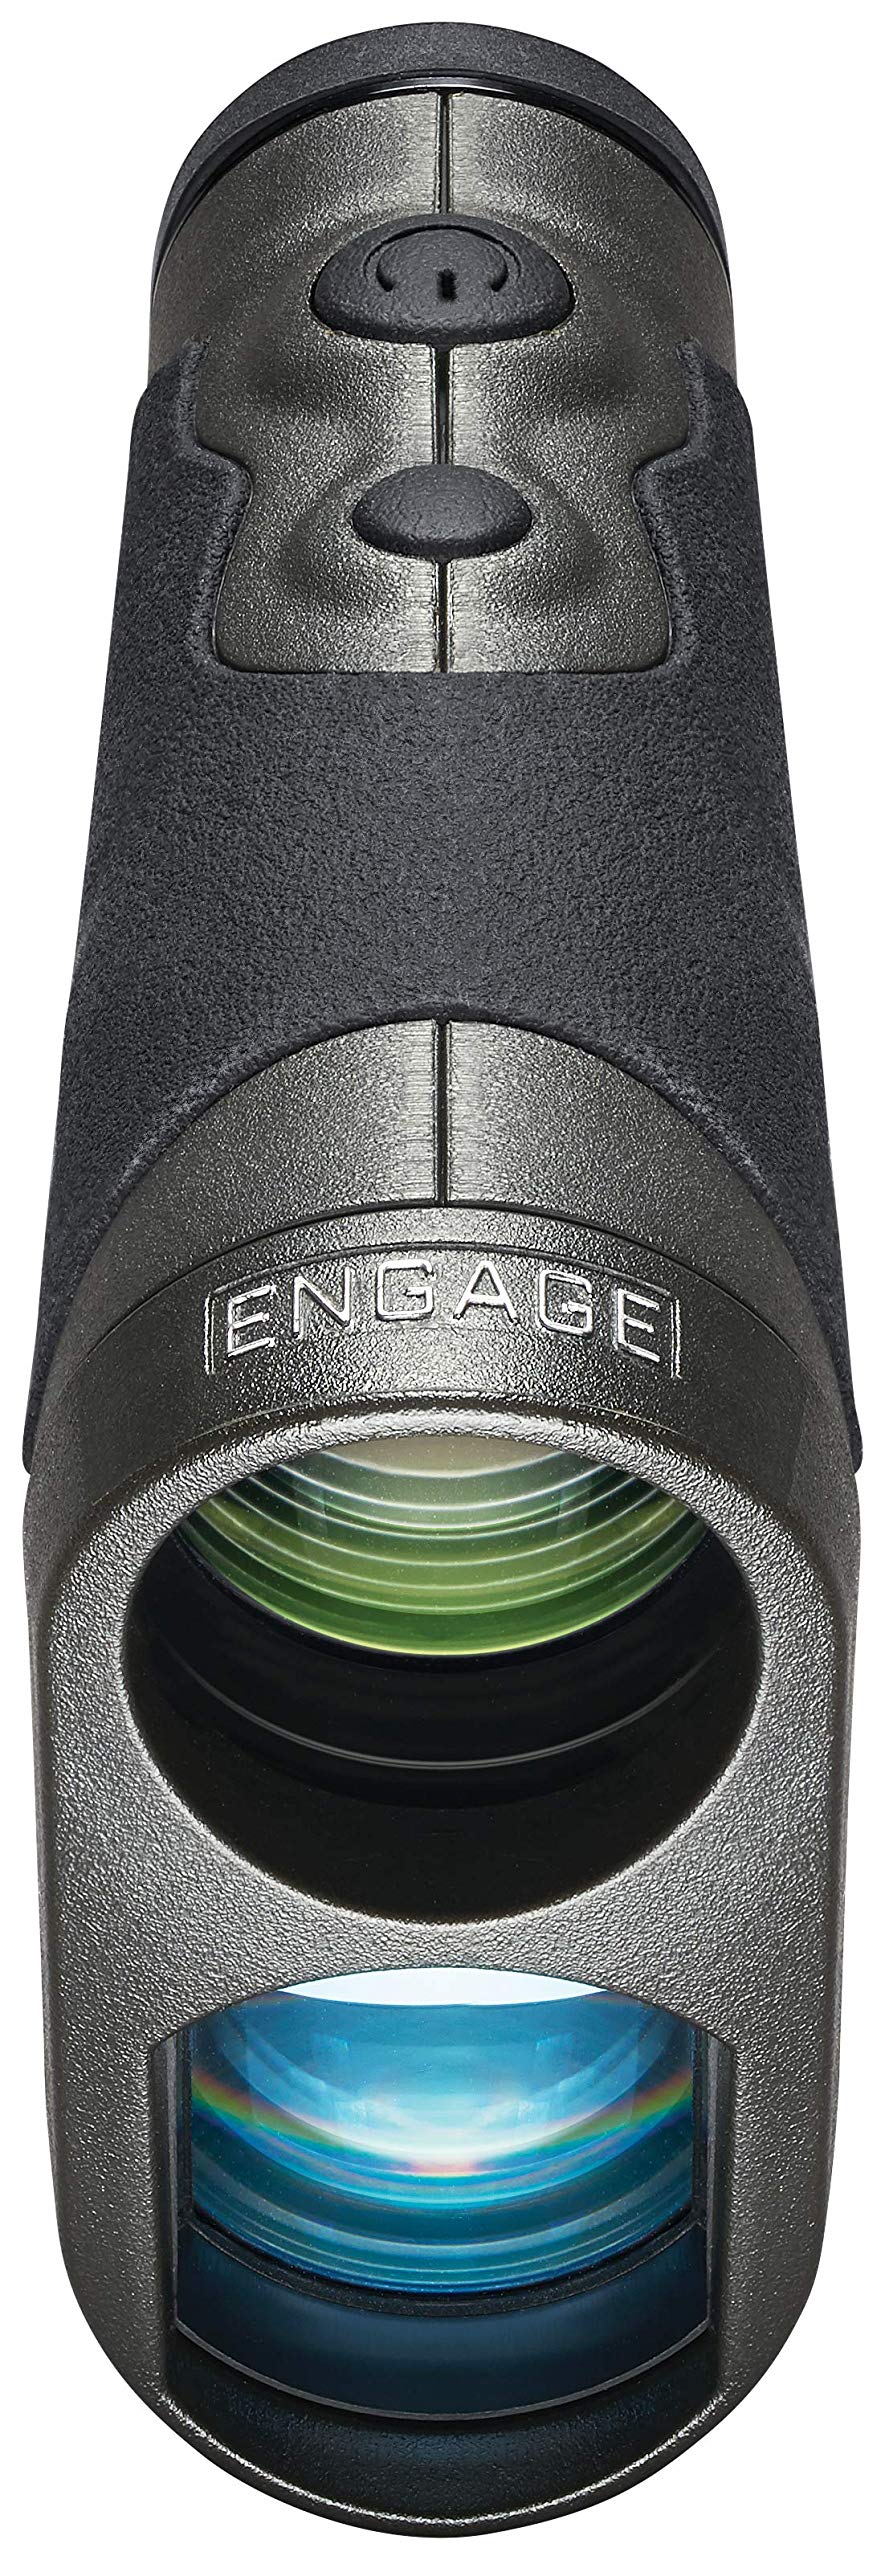 Bushnell Engage Hunting Laser Rangefinder (7848222785774)